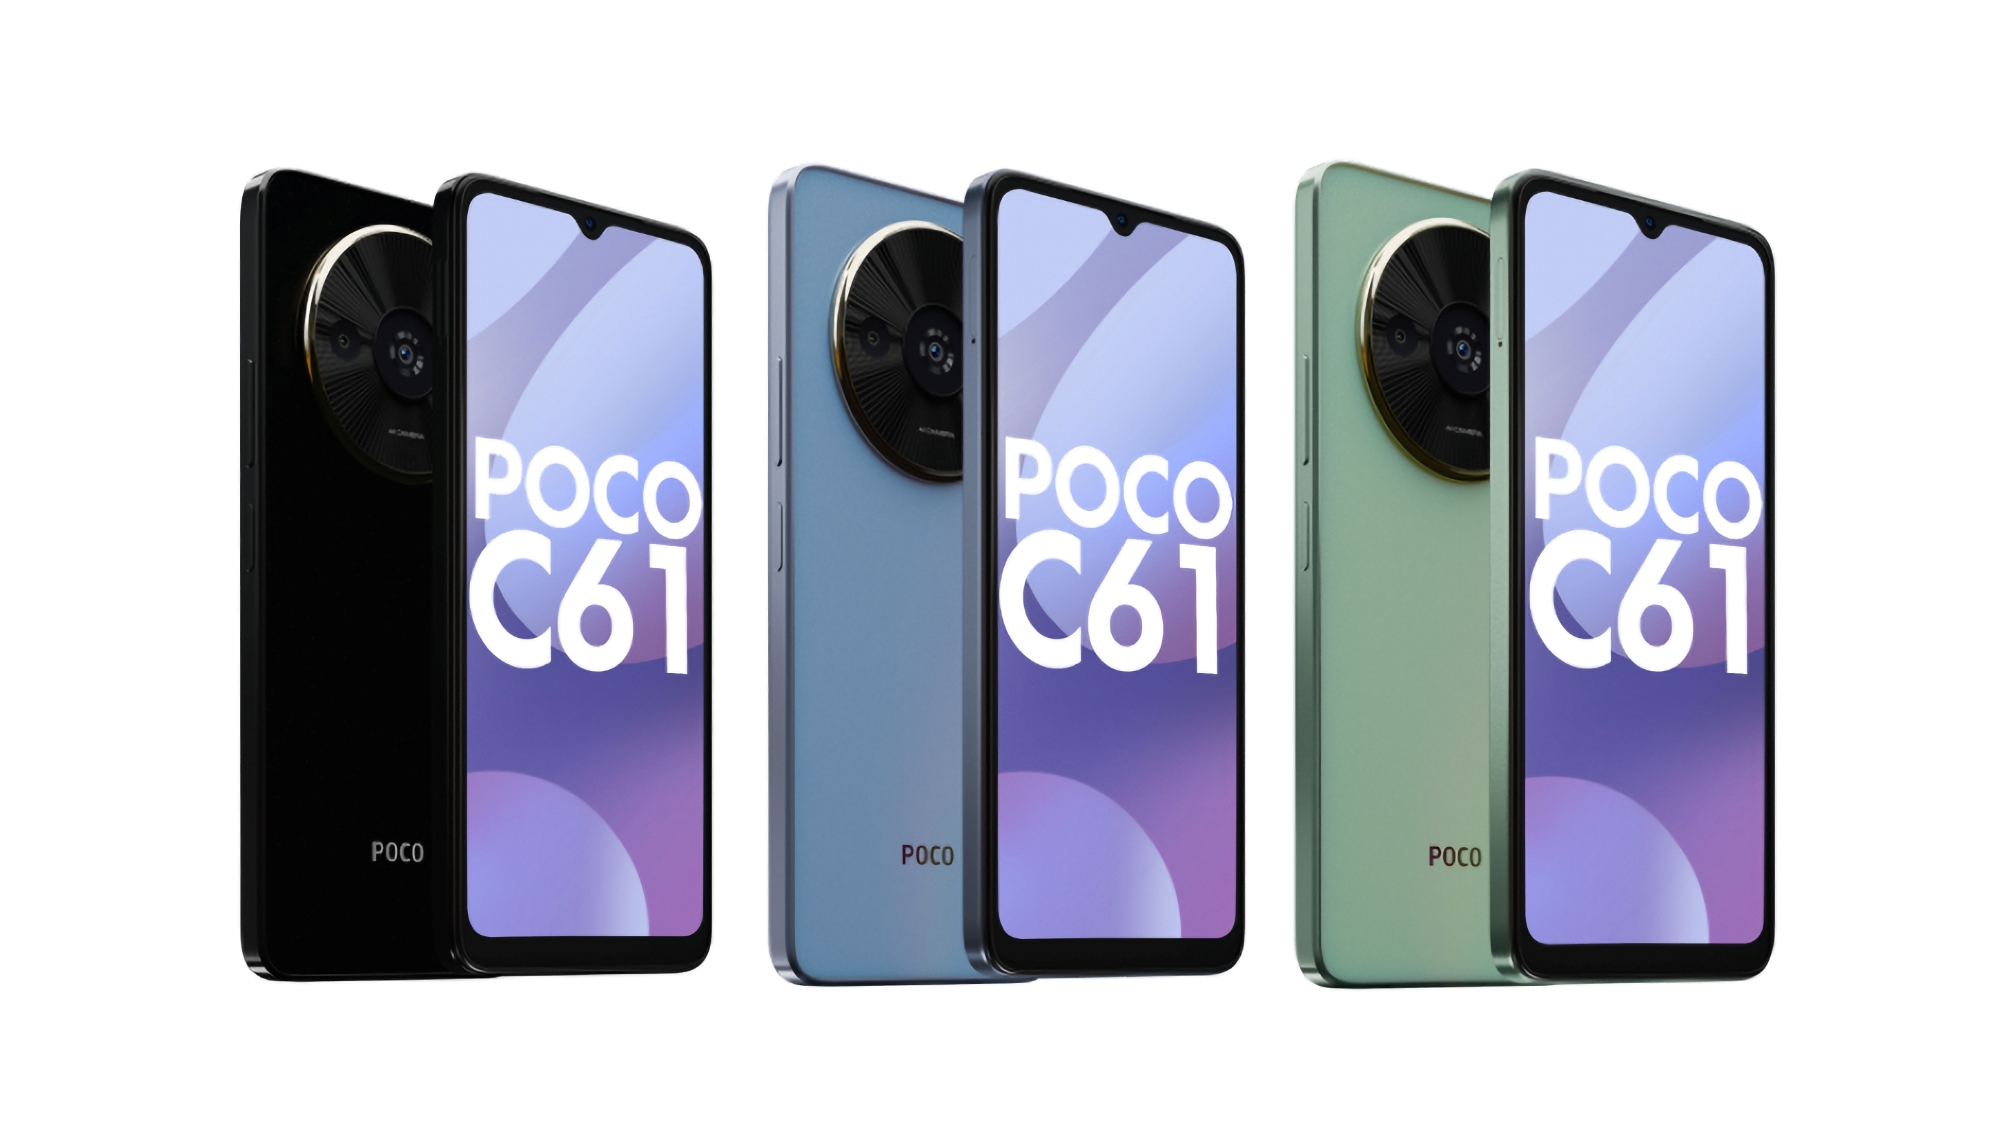 È ufficiale: Xiaomi presenterà il POCO C61 durante un evento il 26 marzo.